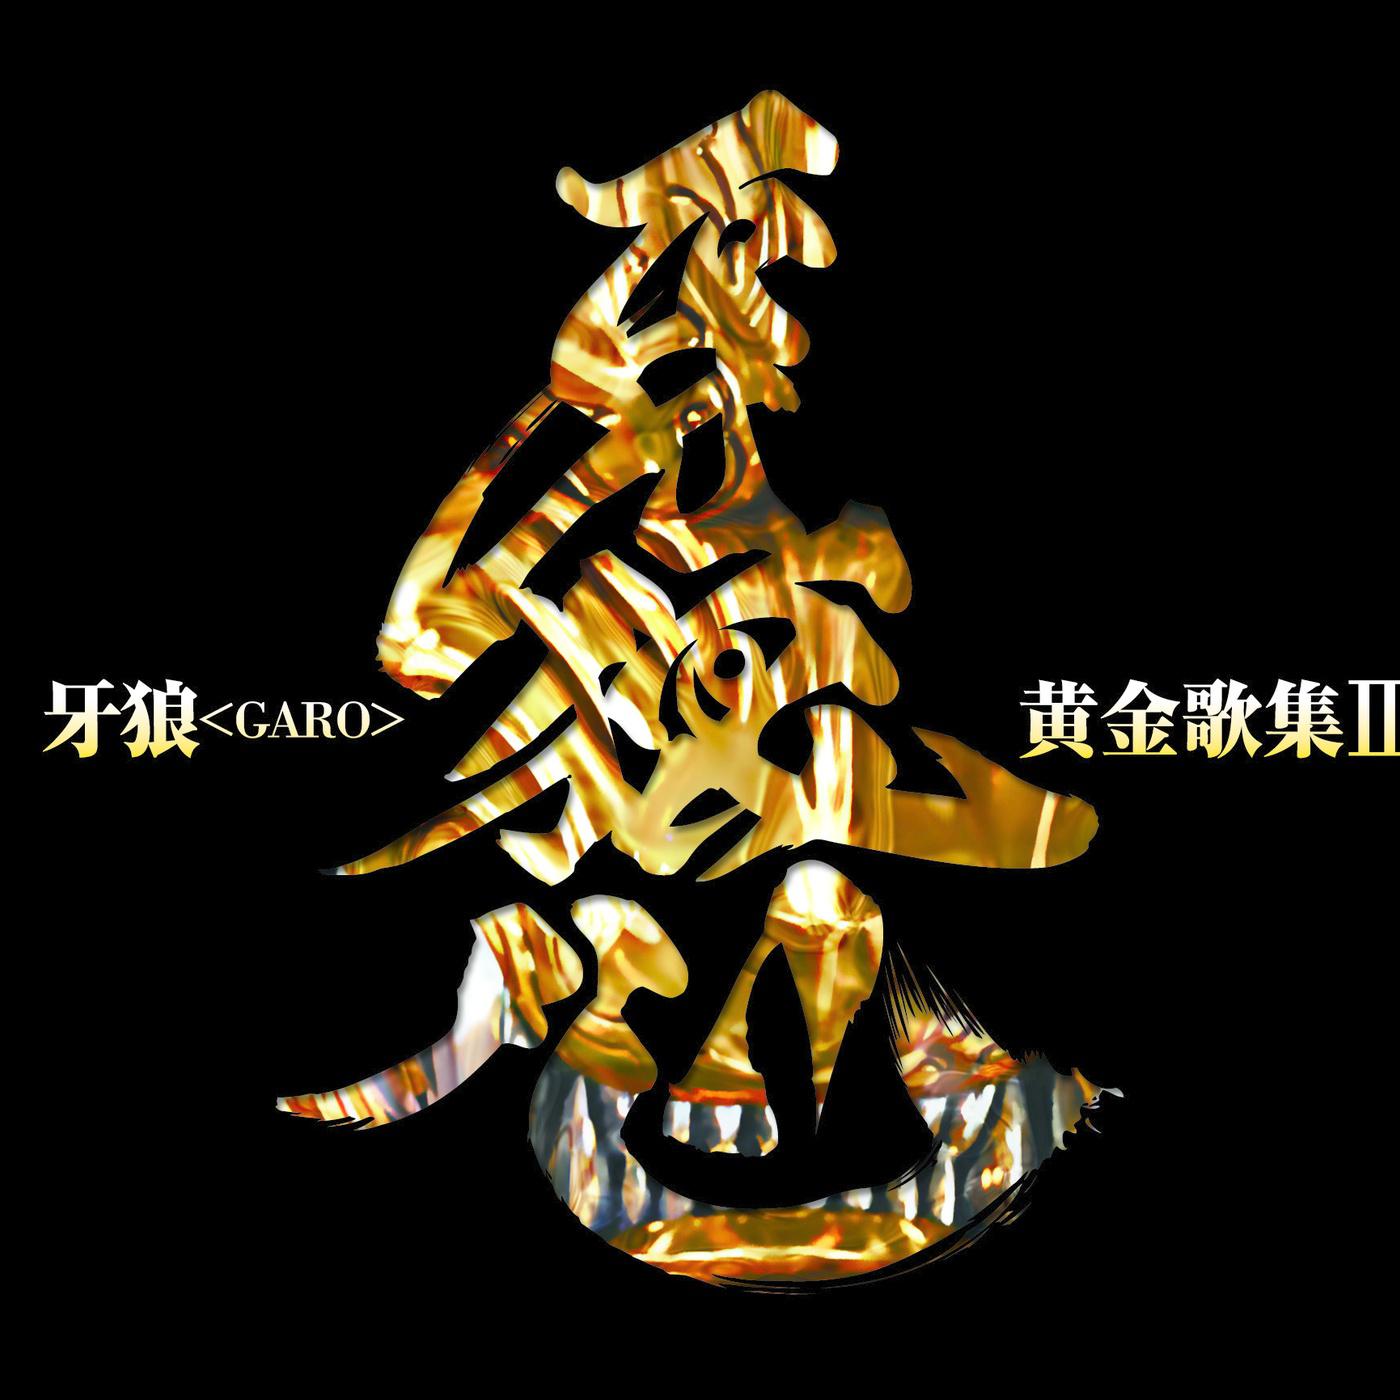 Name is GARO guang ming shi zhe